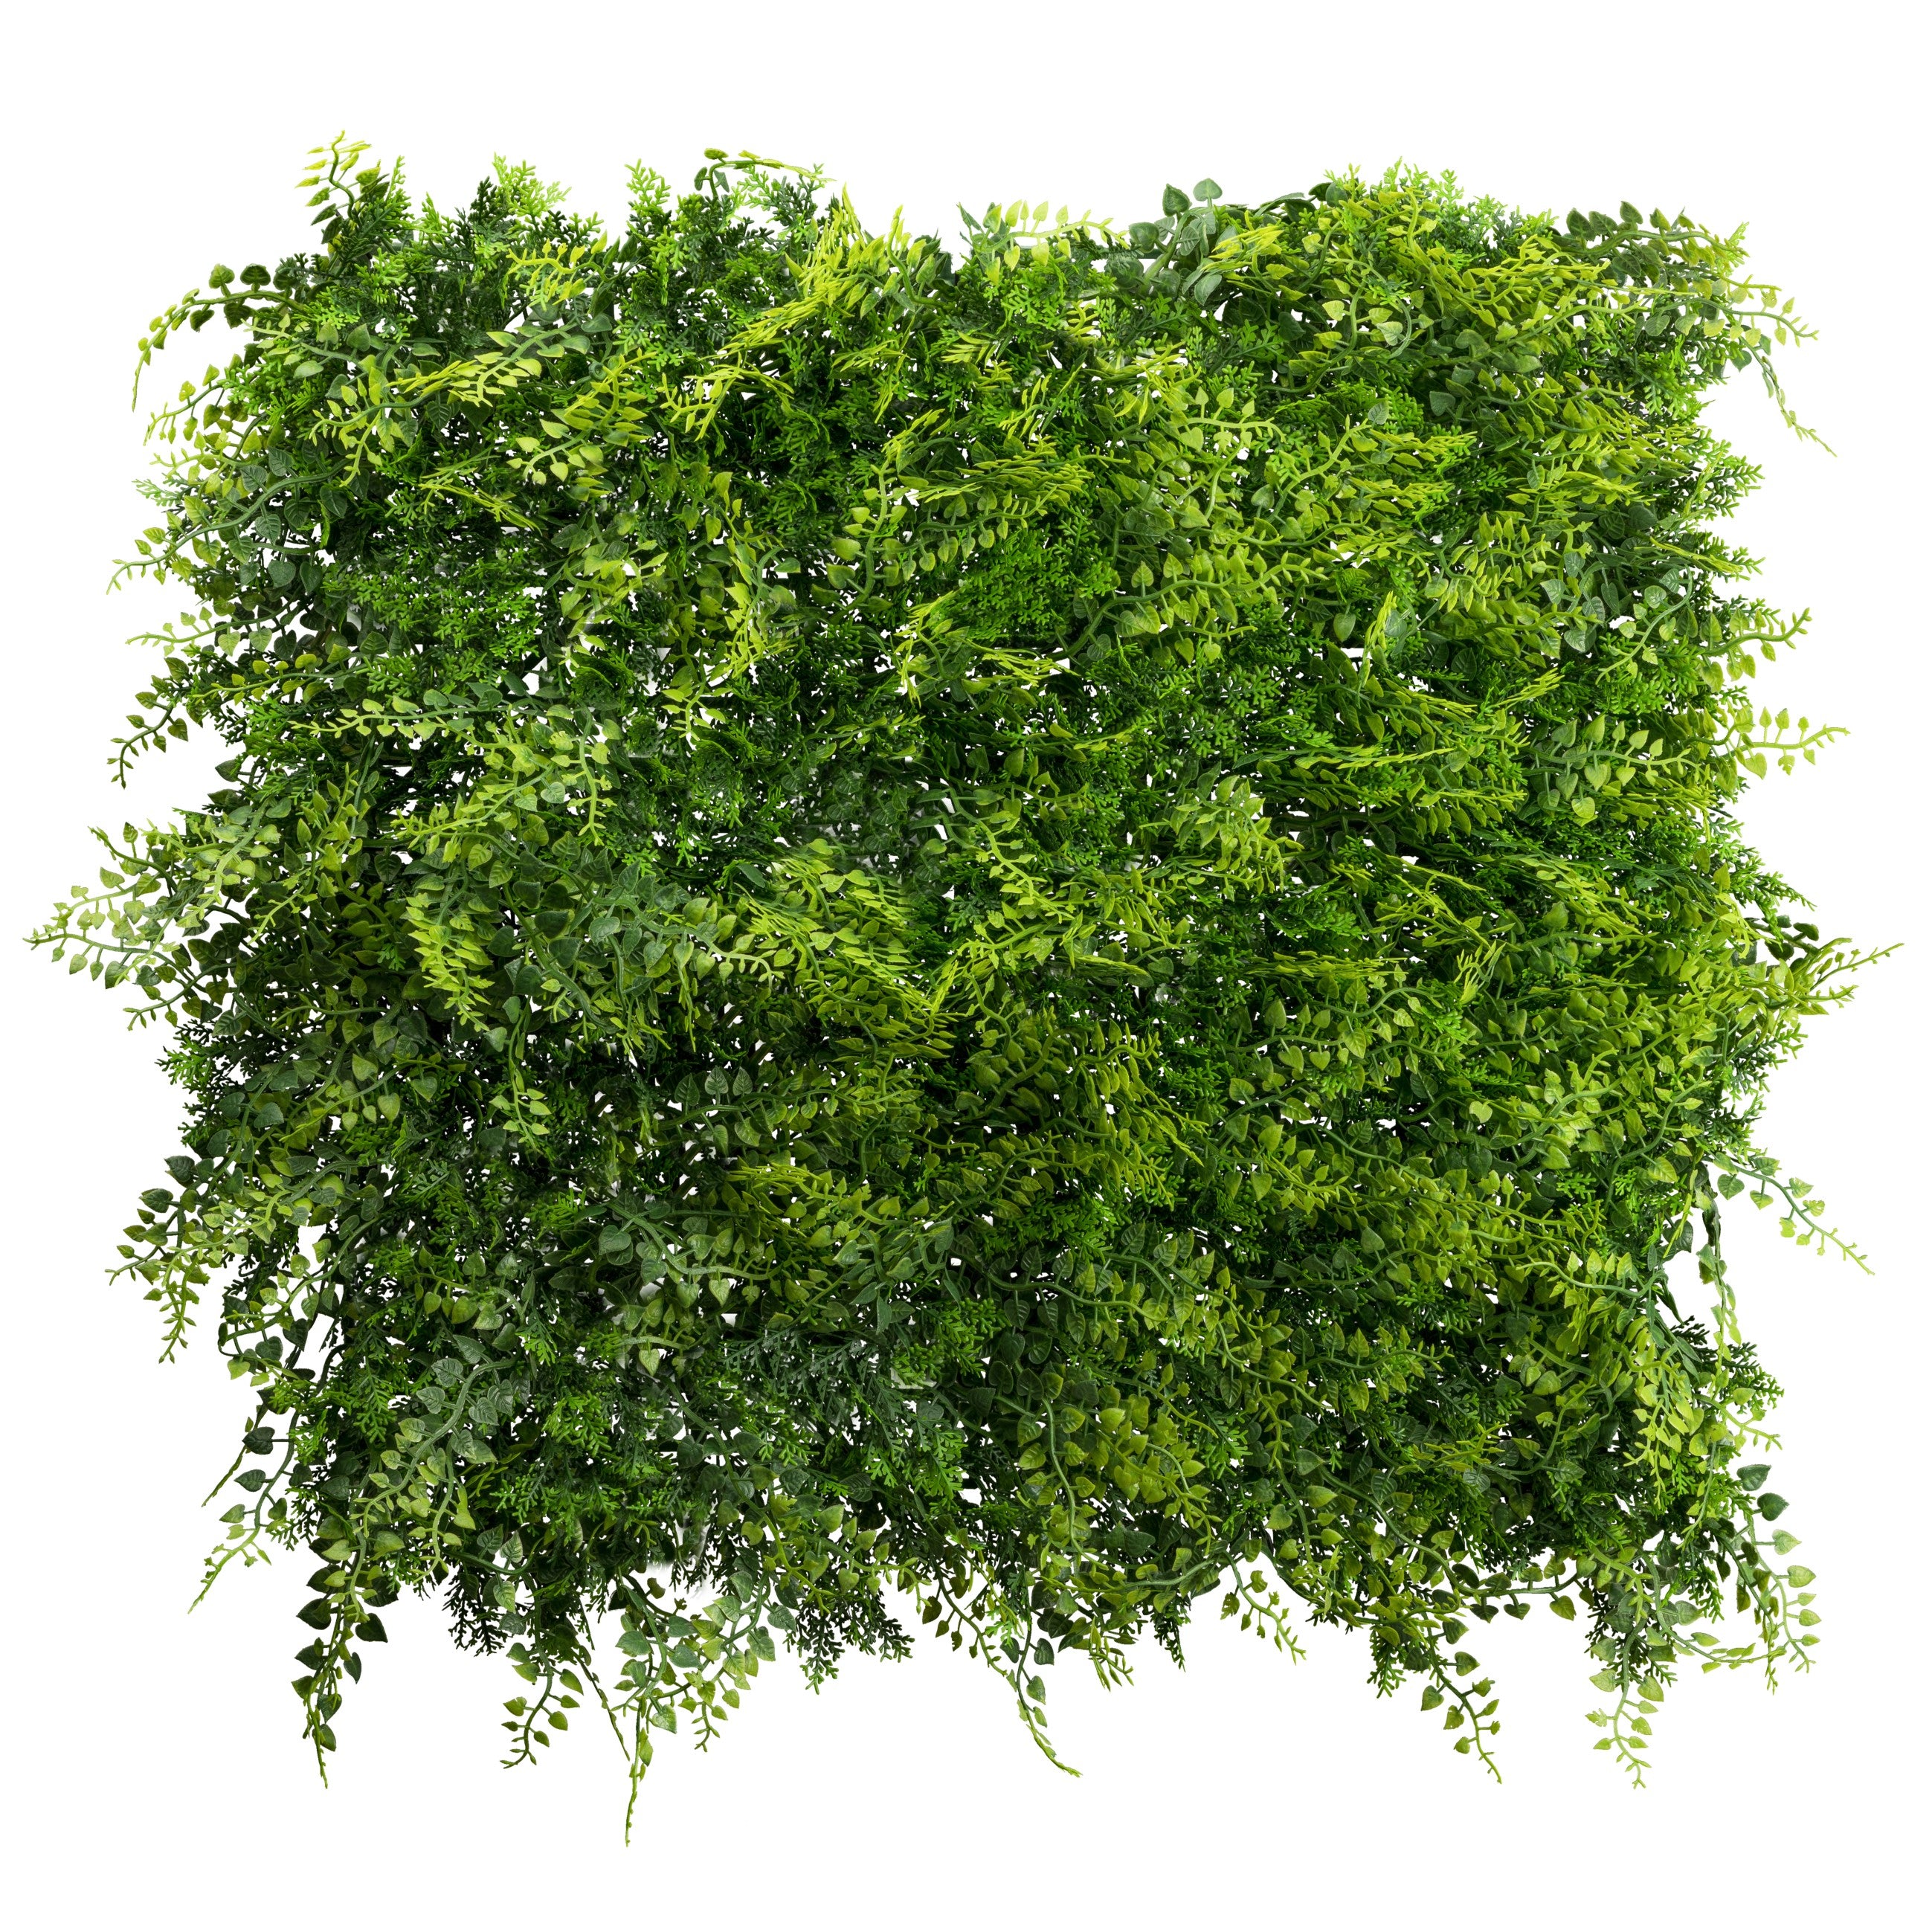 Kopu® kunstplant UV Bestendig Wandpaneel Planten mat 50x50x7 cm Varens